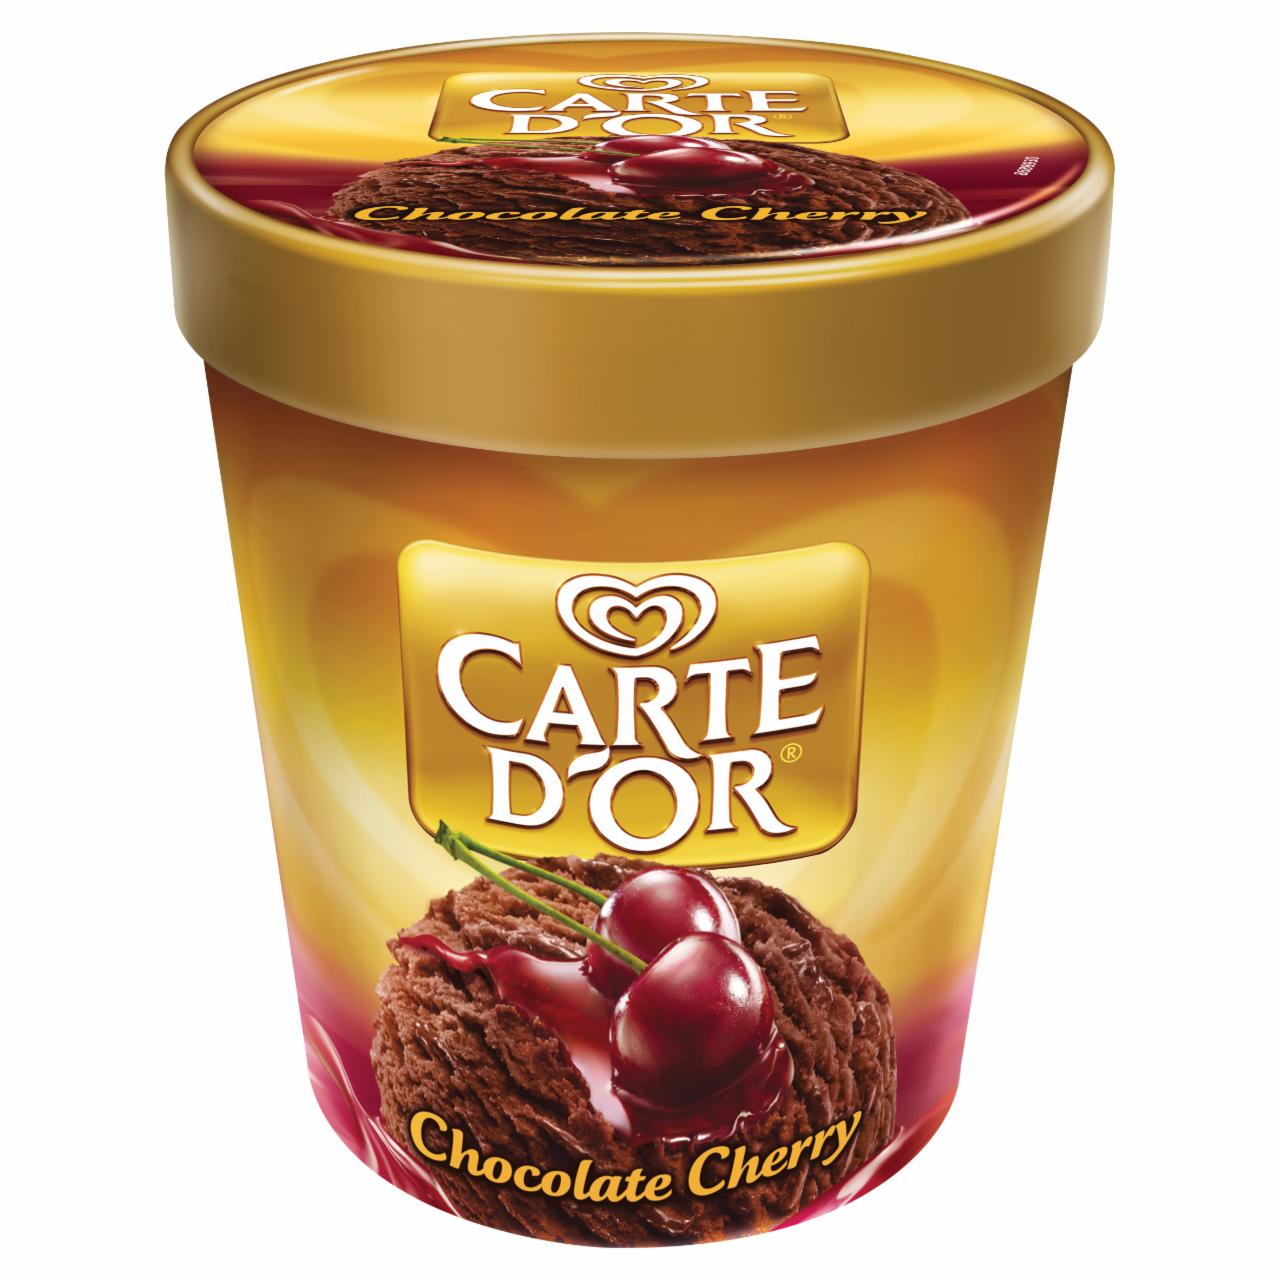 Képek - Carte D'Or meggy ízesítésű csokoládés jégkrém meggy párlattal és szósszal 450 ml